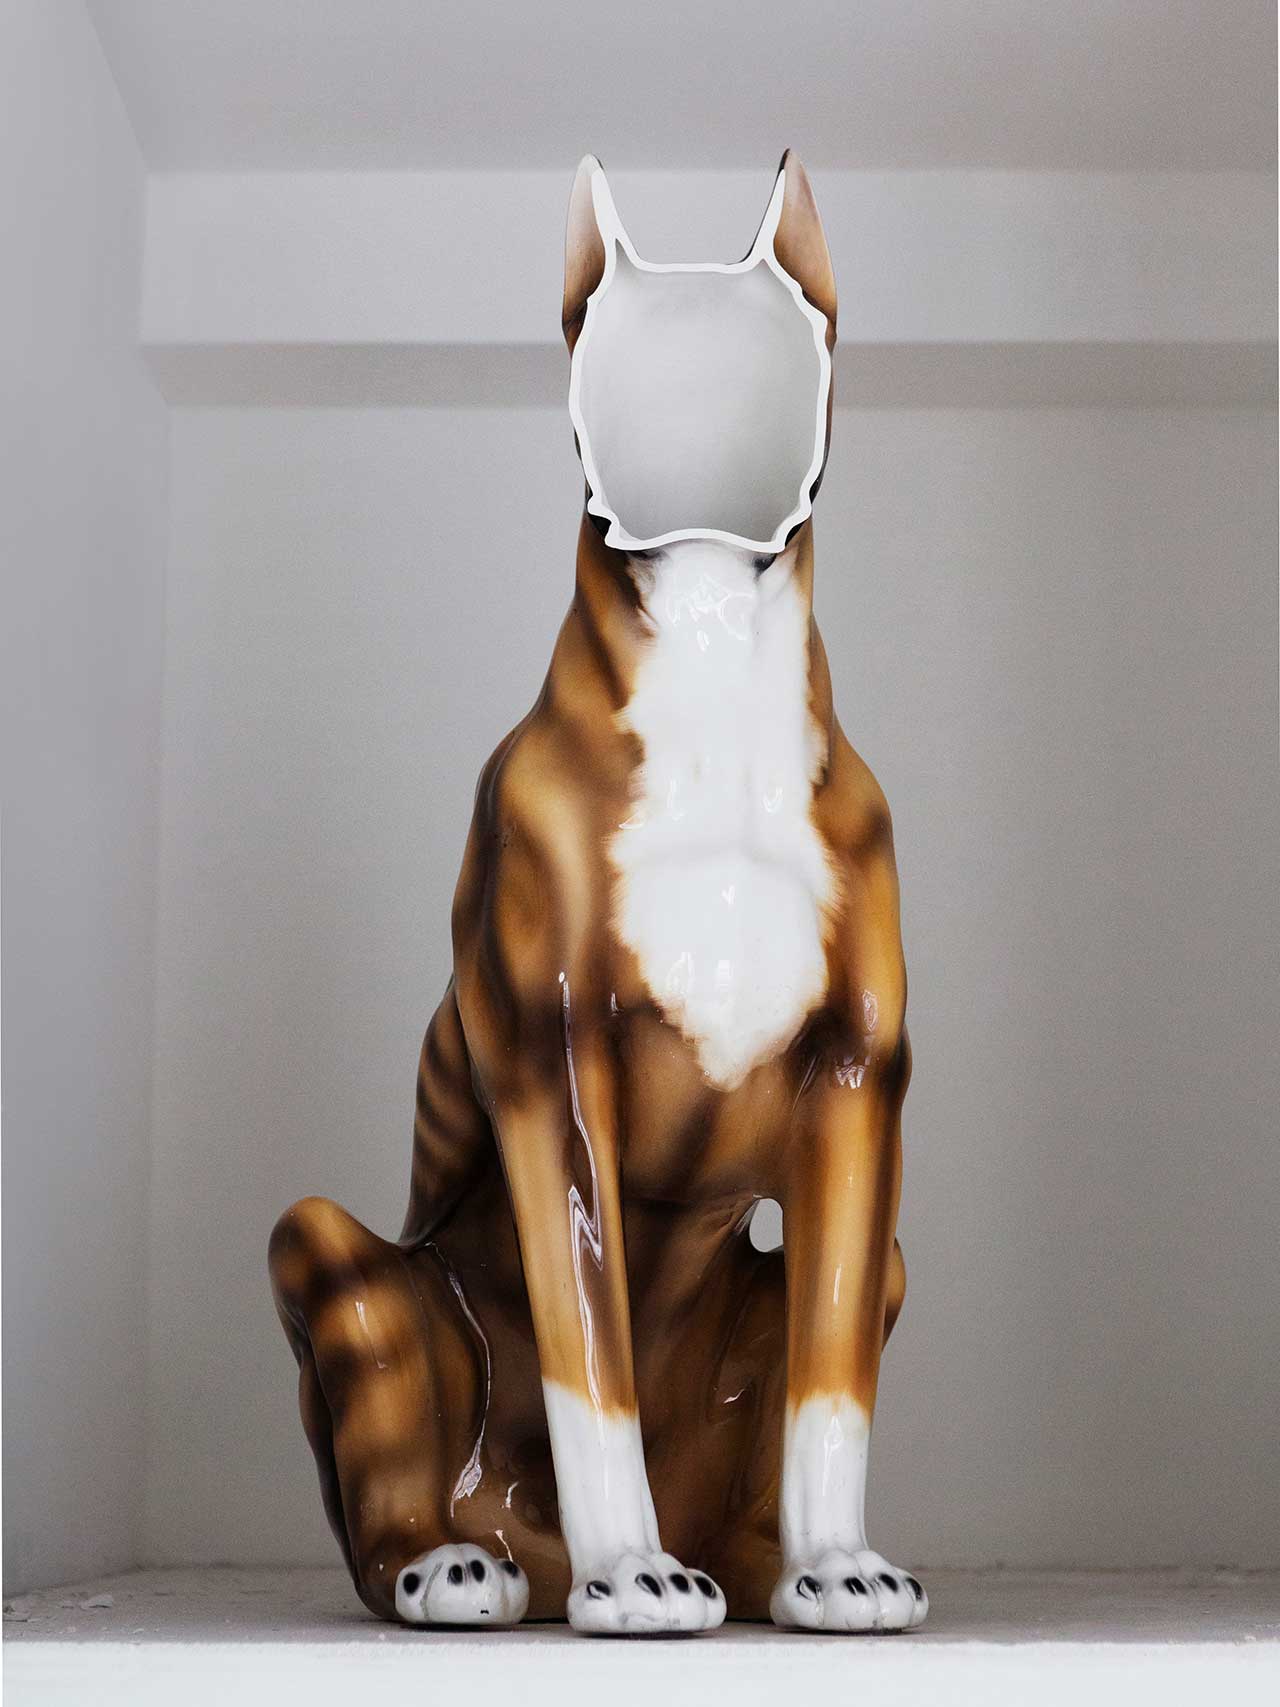 Nucleo (Piergiorgio Robino + Marzia Ricci), “Boolean” Not  (Boxer), 2017. Cut on vintage ceramic sculpture, 40 x 42 x 86h cm. Unique piece in an edition 1+1. Photo by Studio Pepe Fotografia.